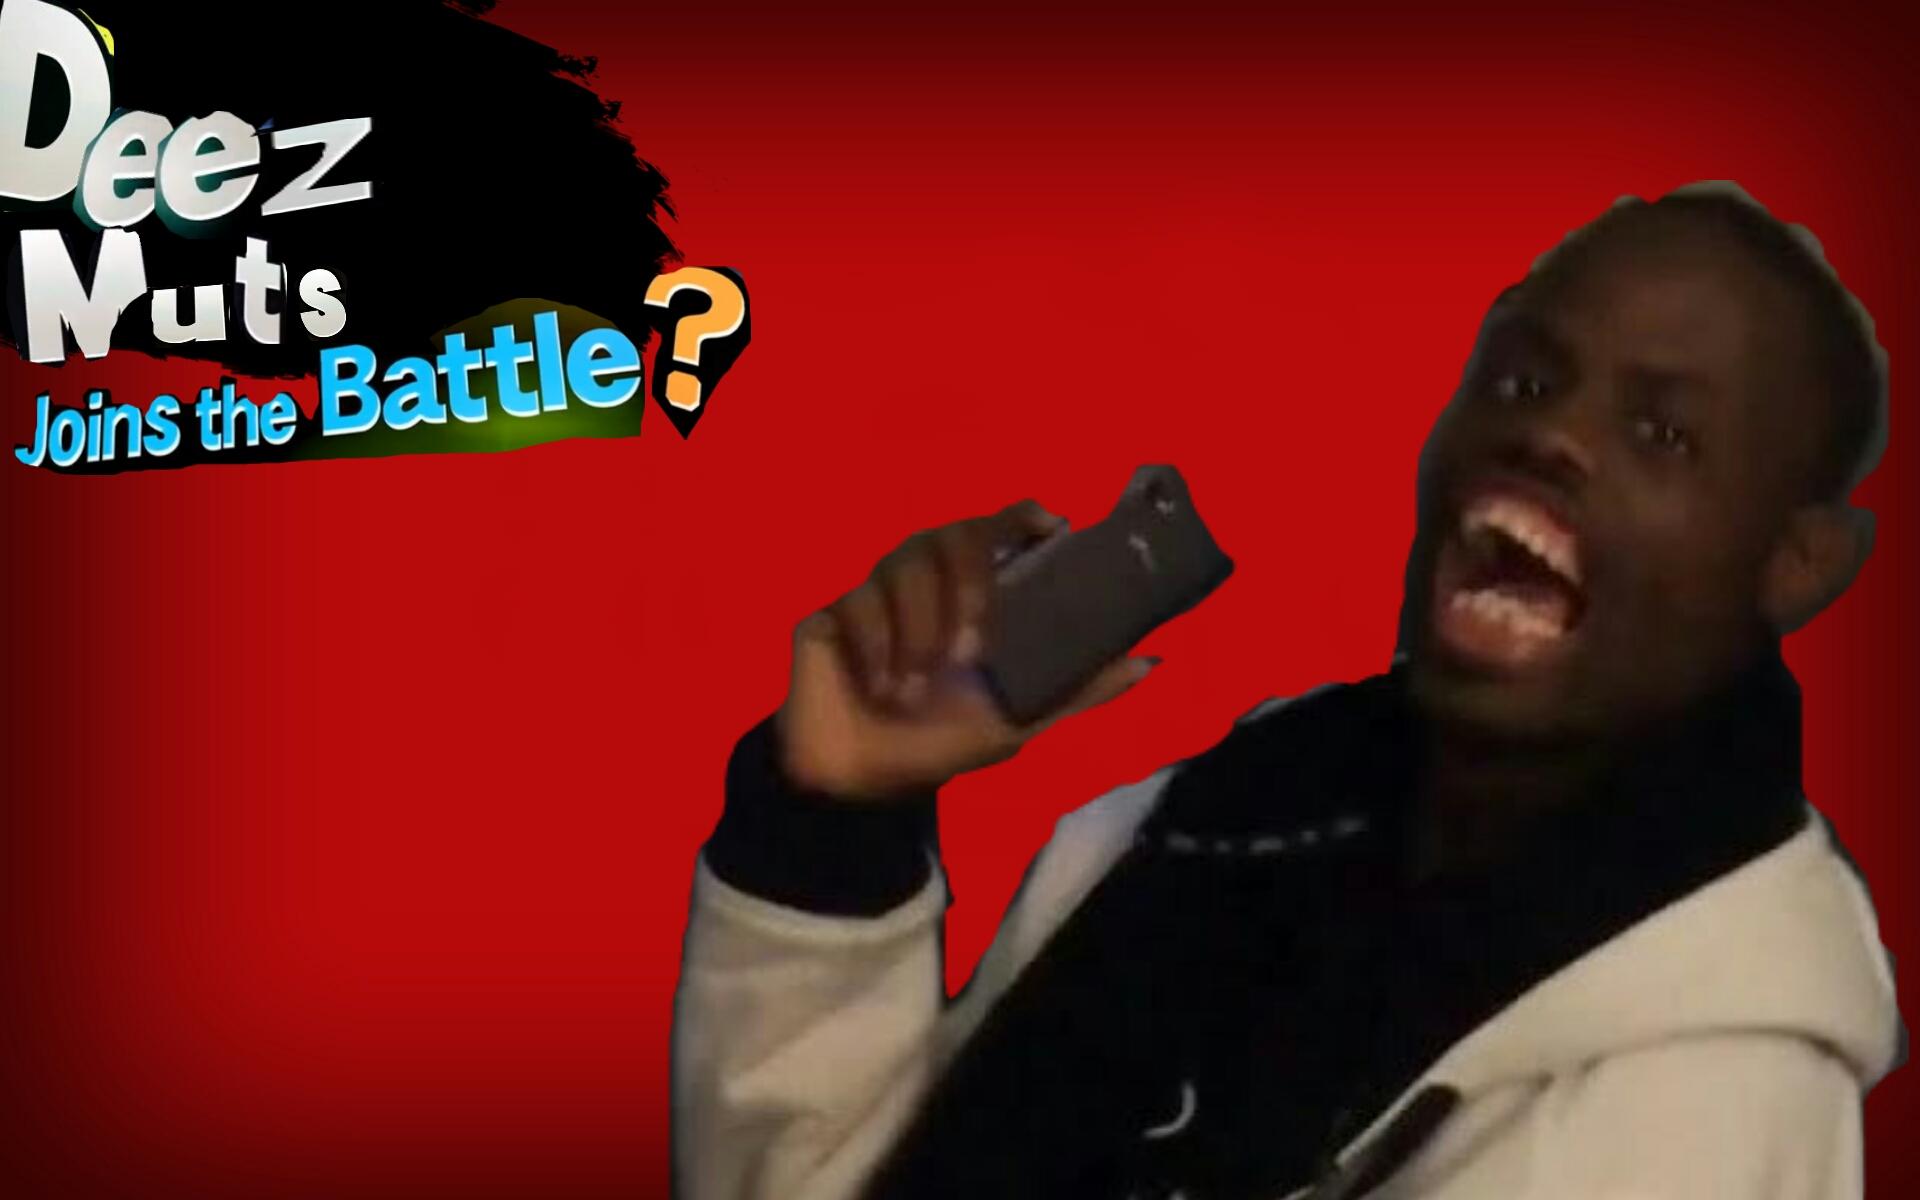 Ez Uts Joins The Battle Super Smash Bros - Super Smash Bros Joins The Battle Meme - HD Wallpaper 